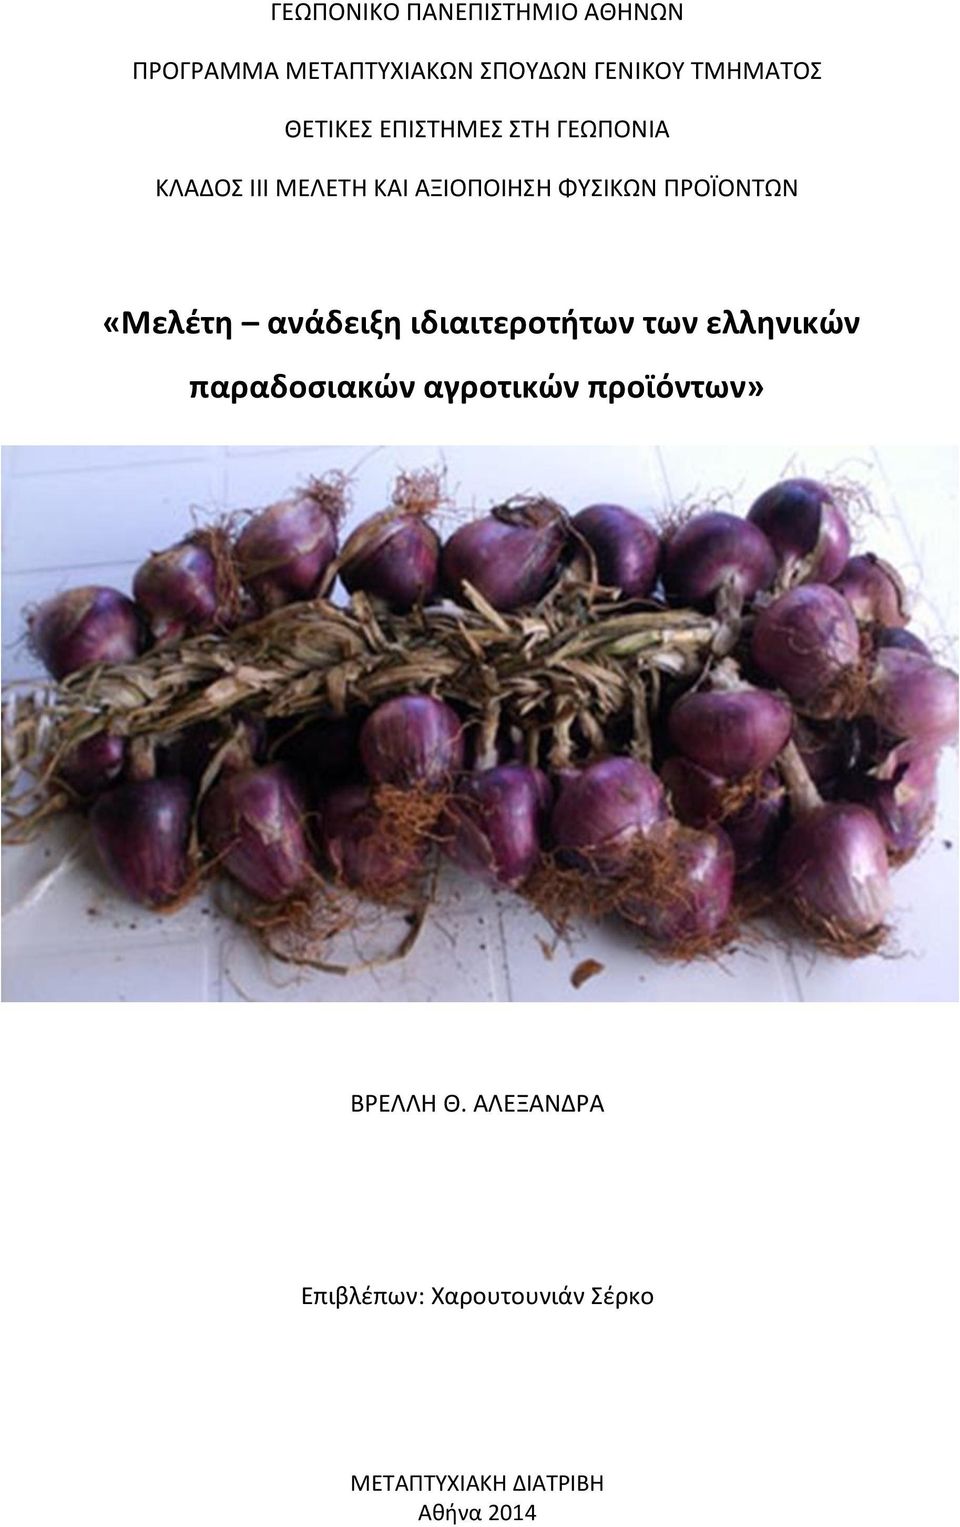 ΠΡΟΪΟΝΤΩΝ «Μελέτη ανάδειξη ιδιαιτεροτήτων των ελληνικών παραδοσιακών αγροτικών